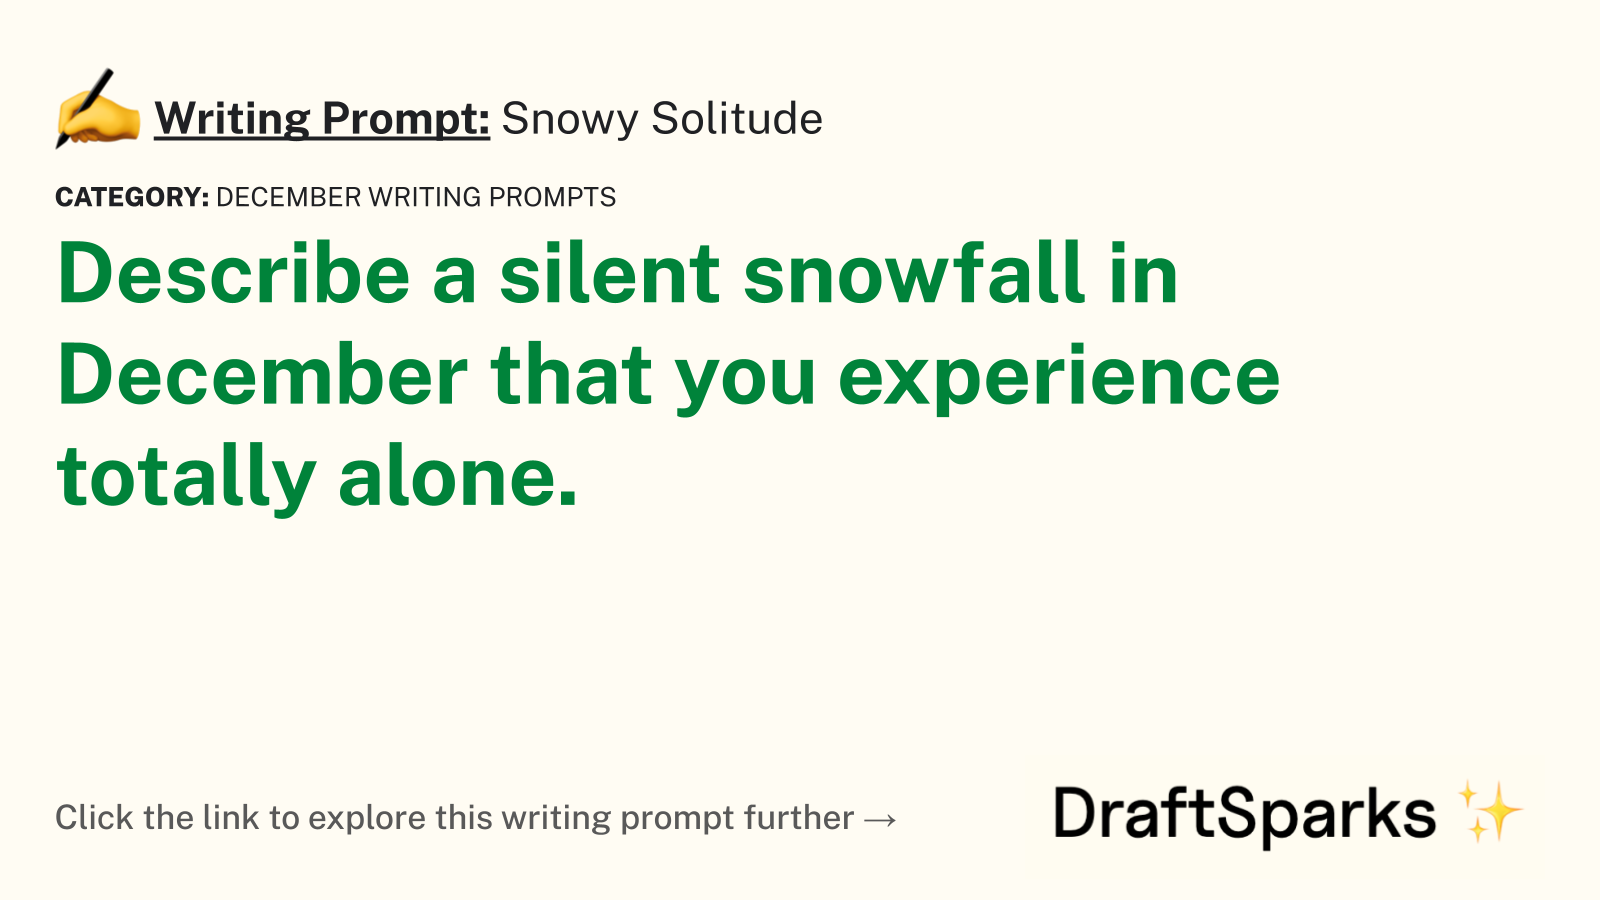 Snowy Solitude